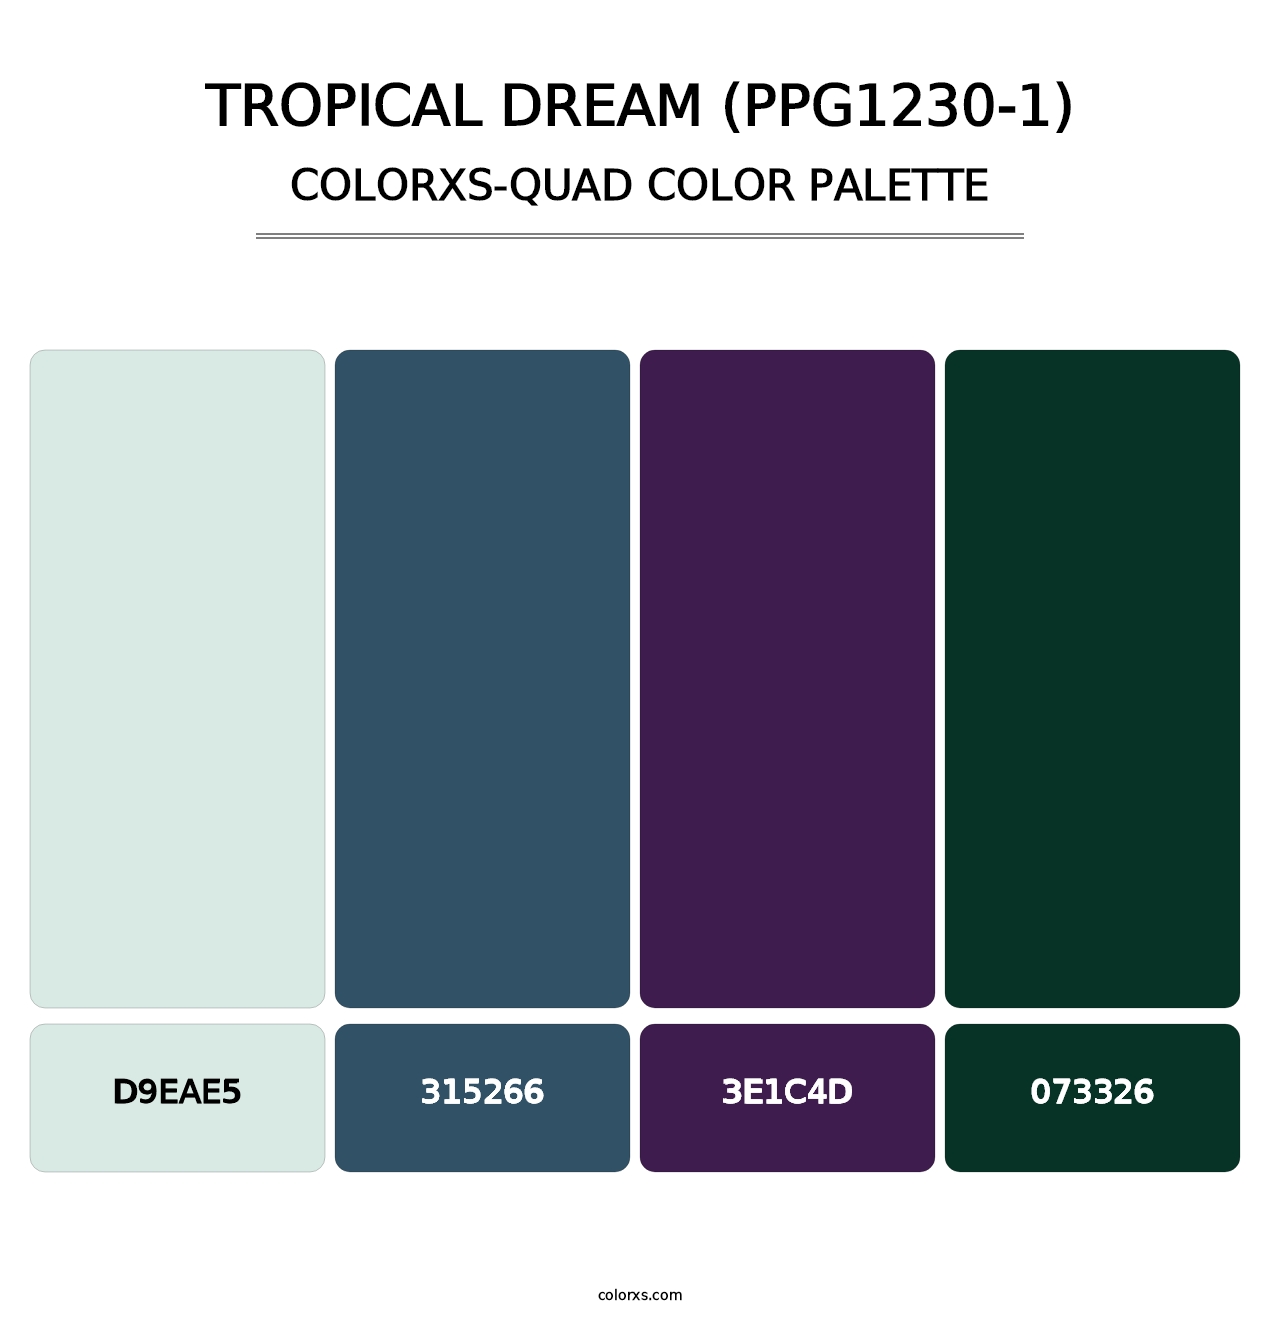 Tropical Dream (PPG1230-1) - Colorxs Quad Palette